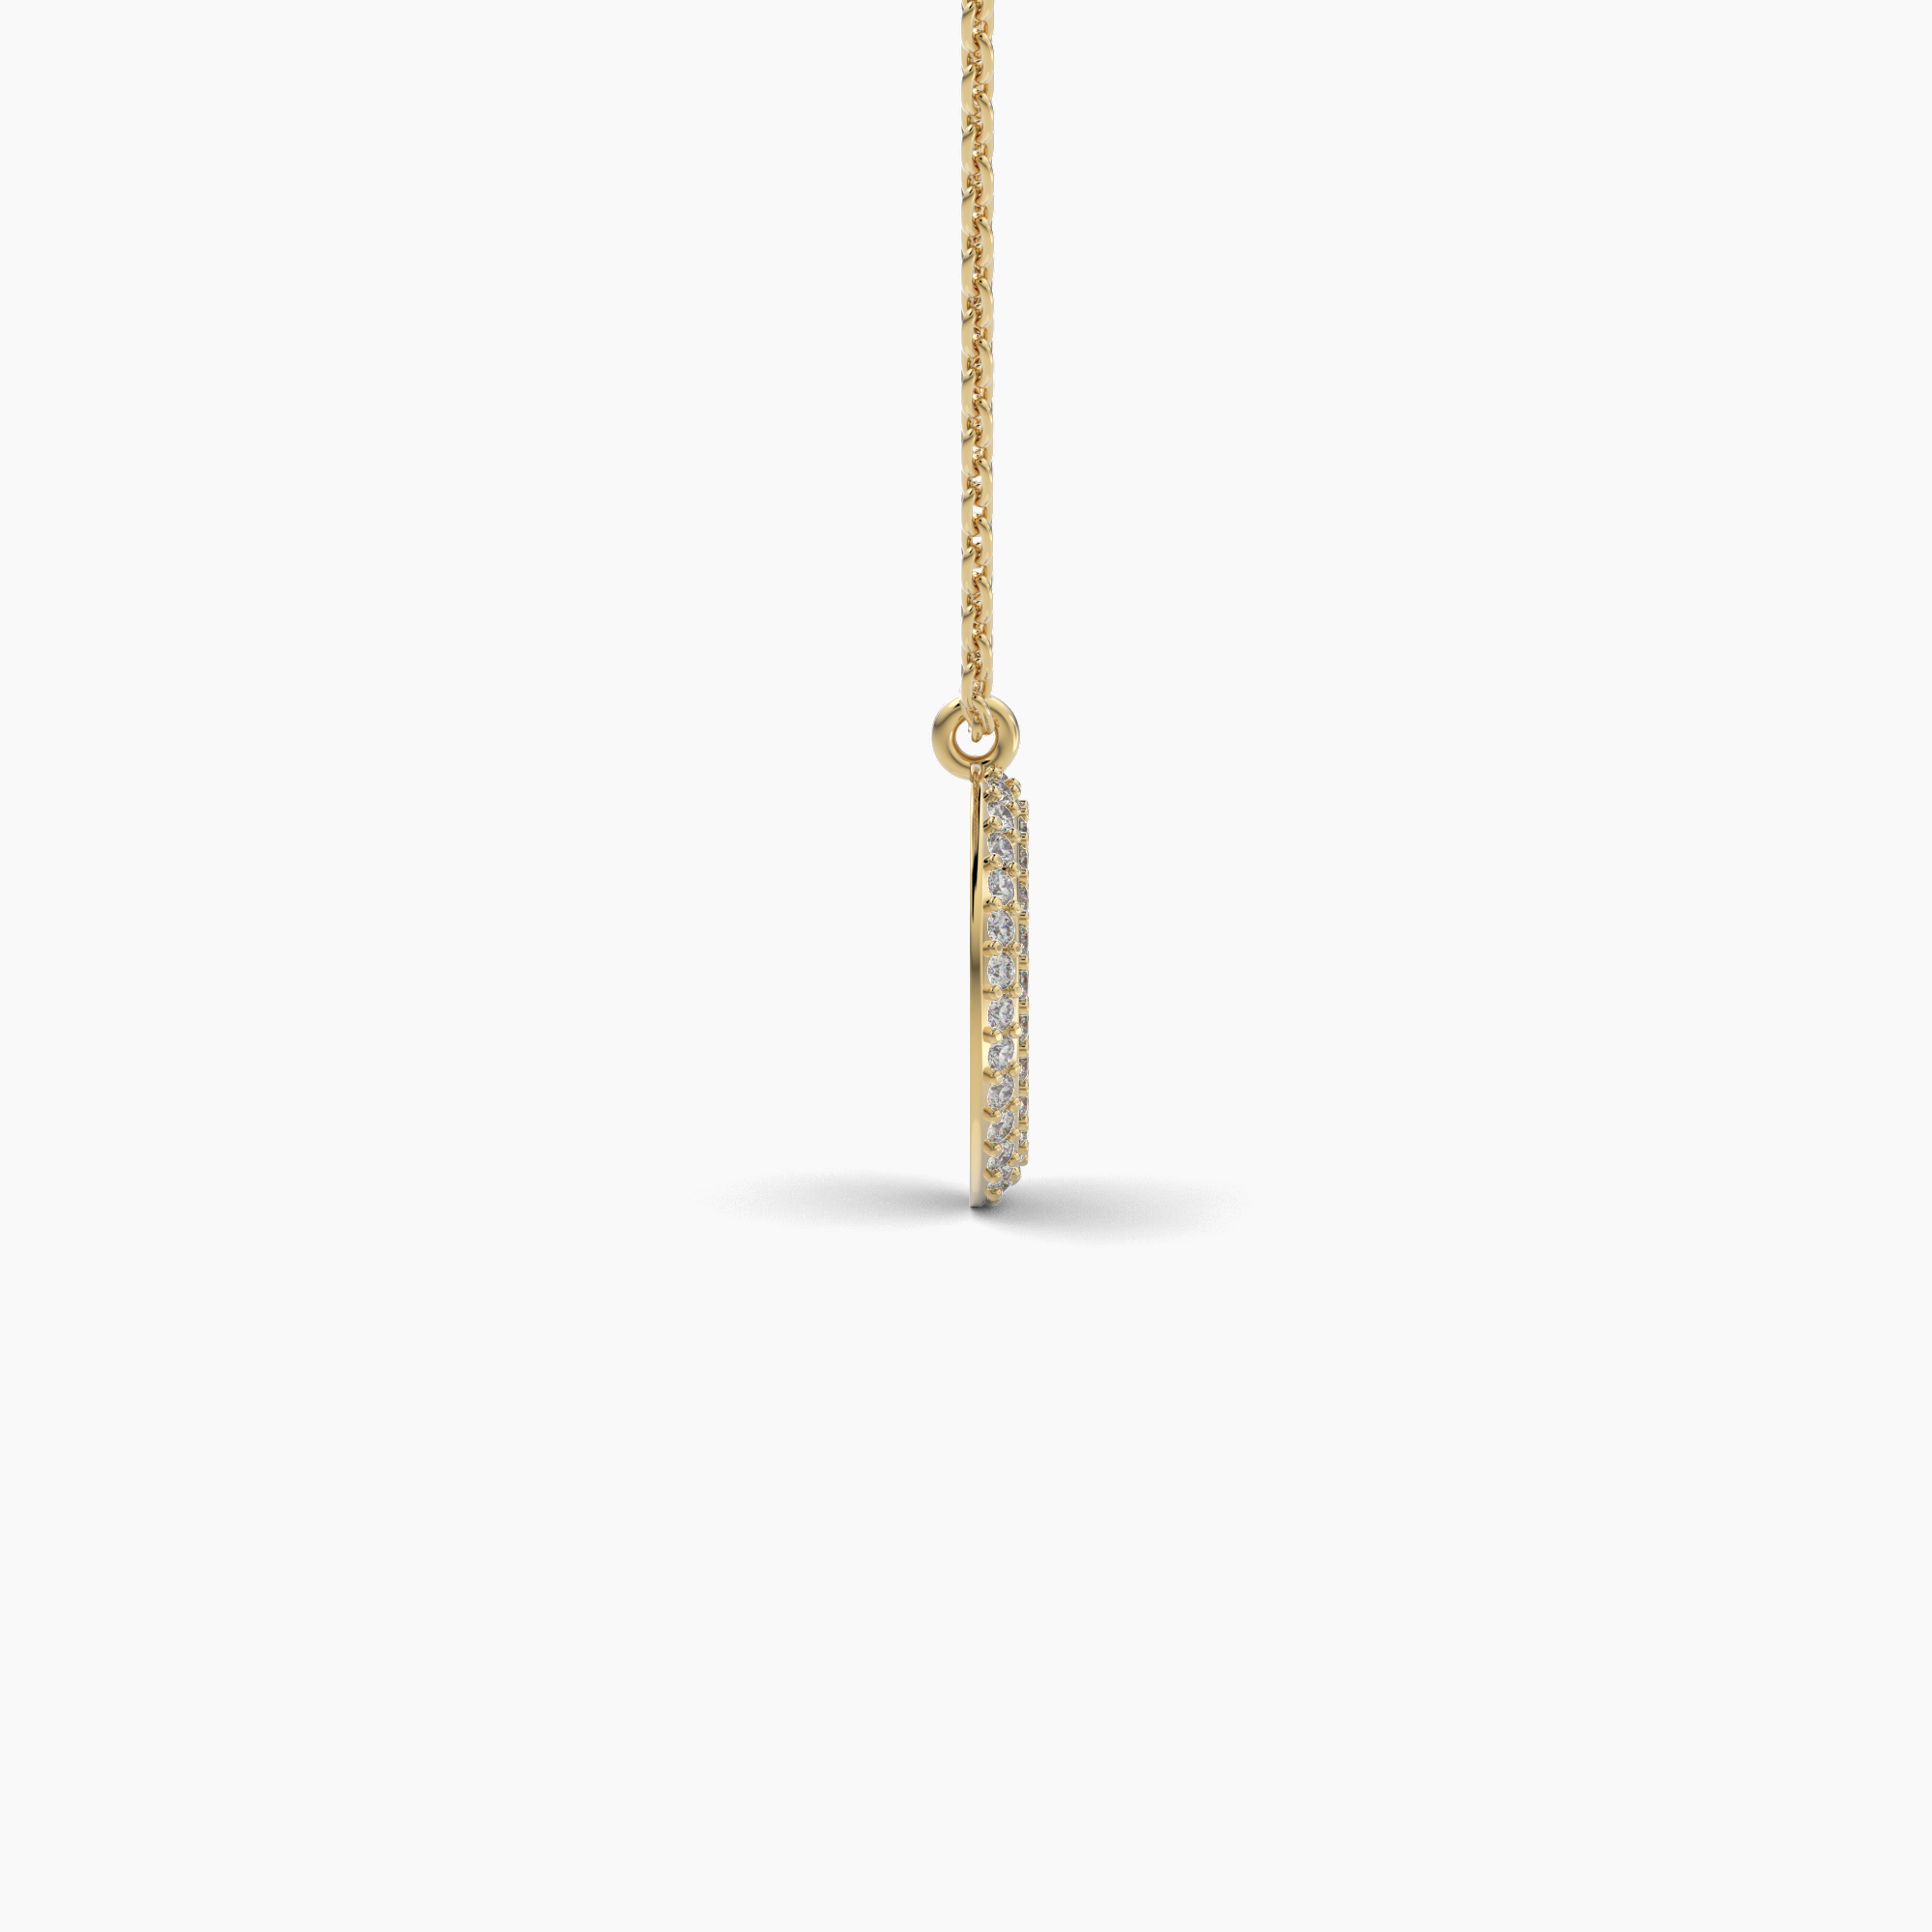 Oval Shaped AMoré Pavé Necklace With 0.60 ct. Diamonds